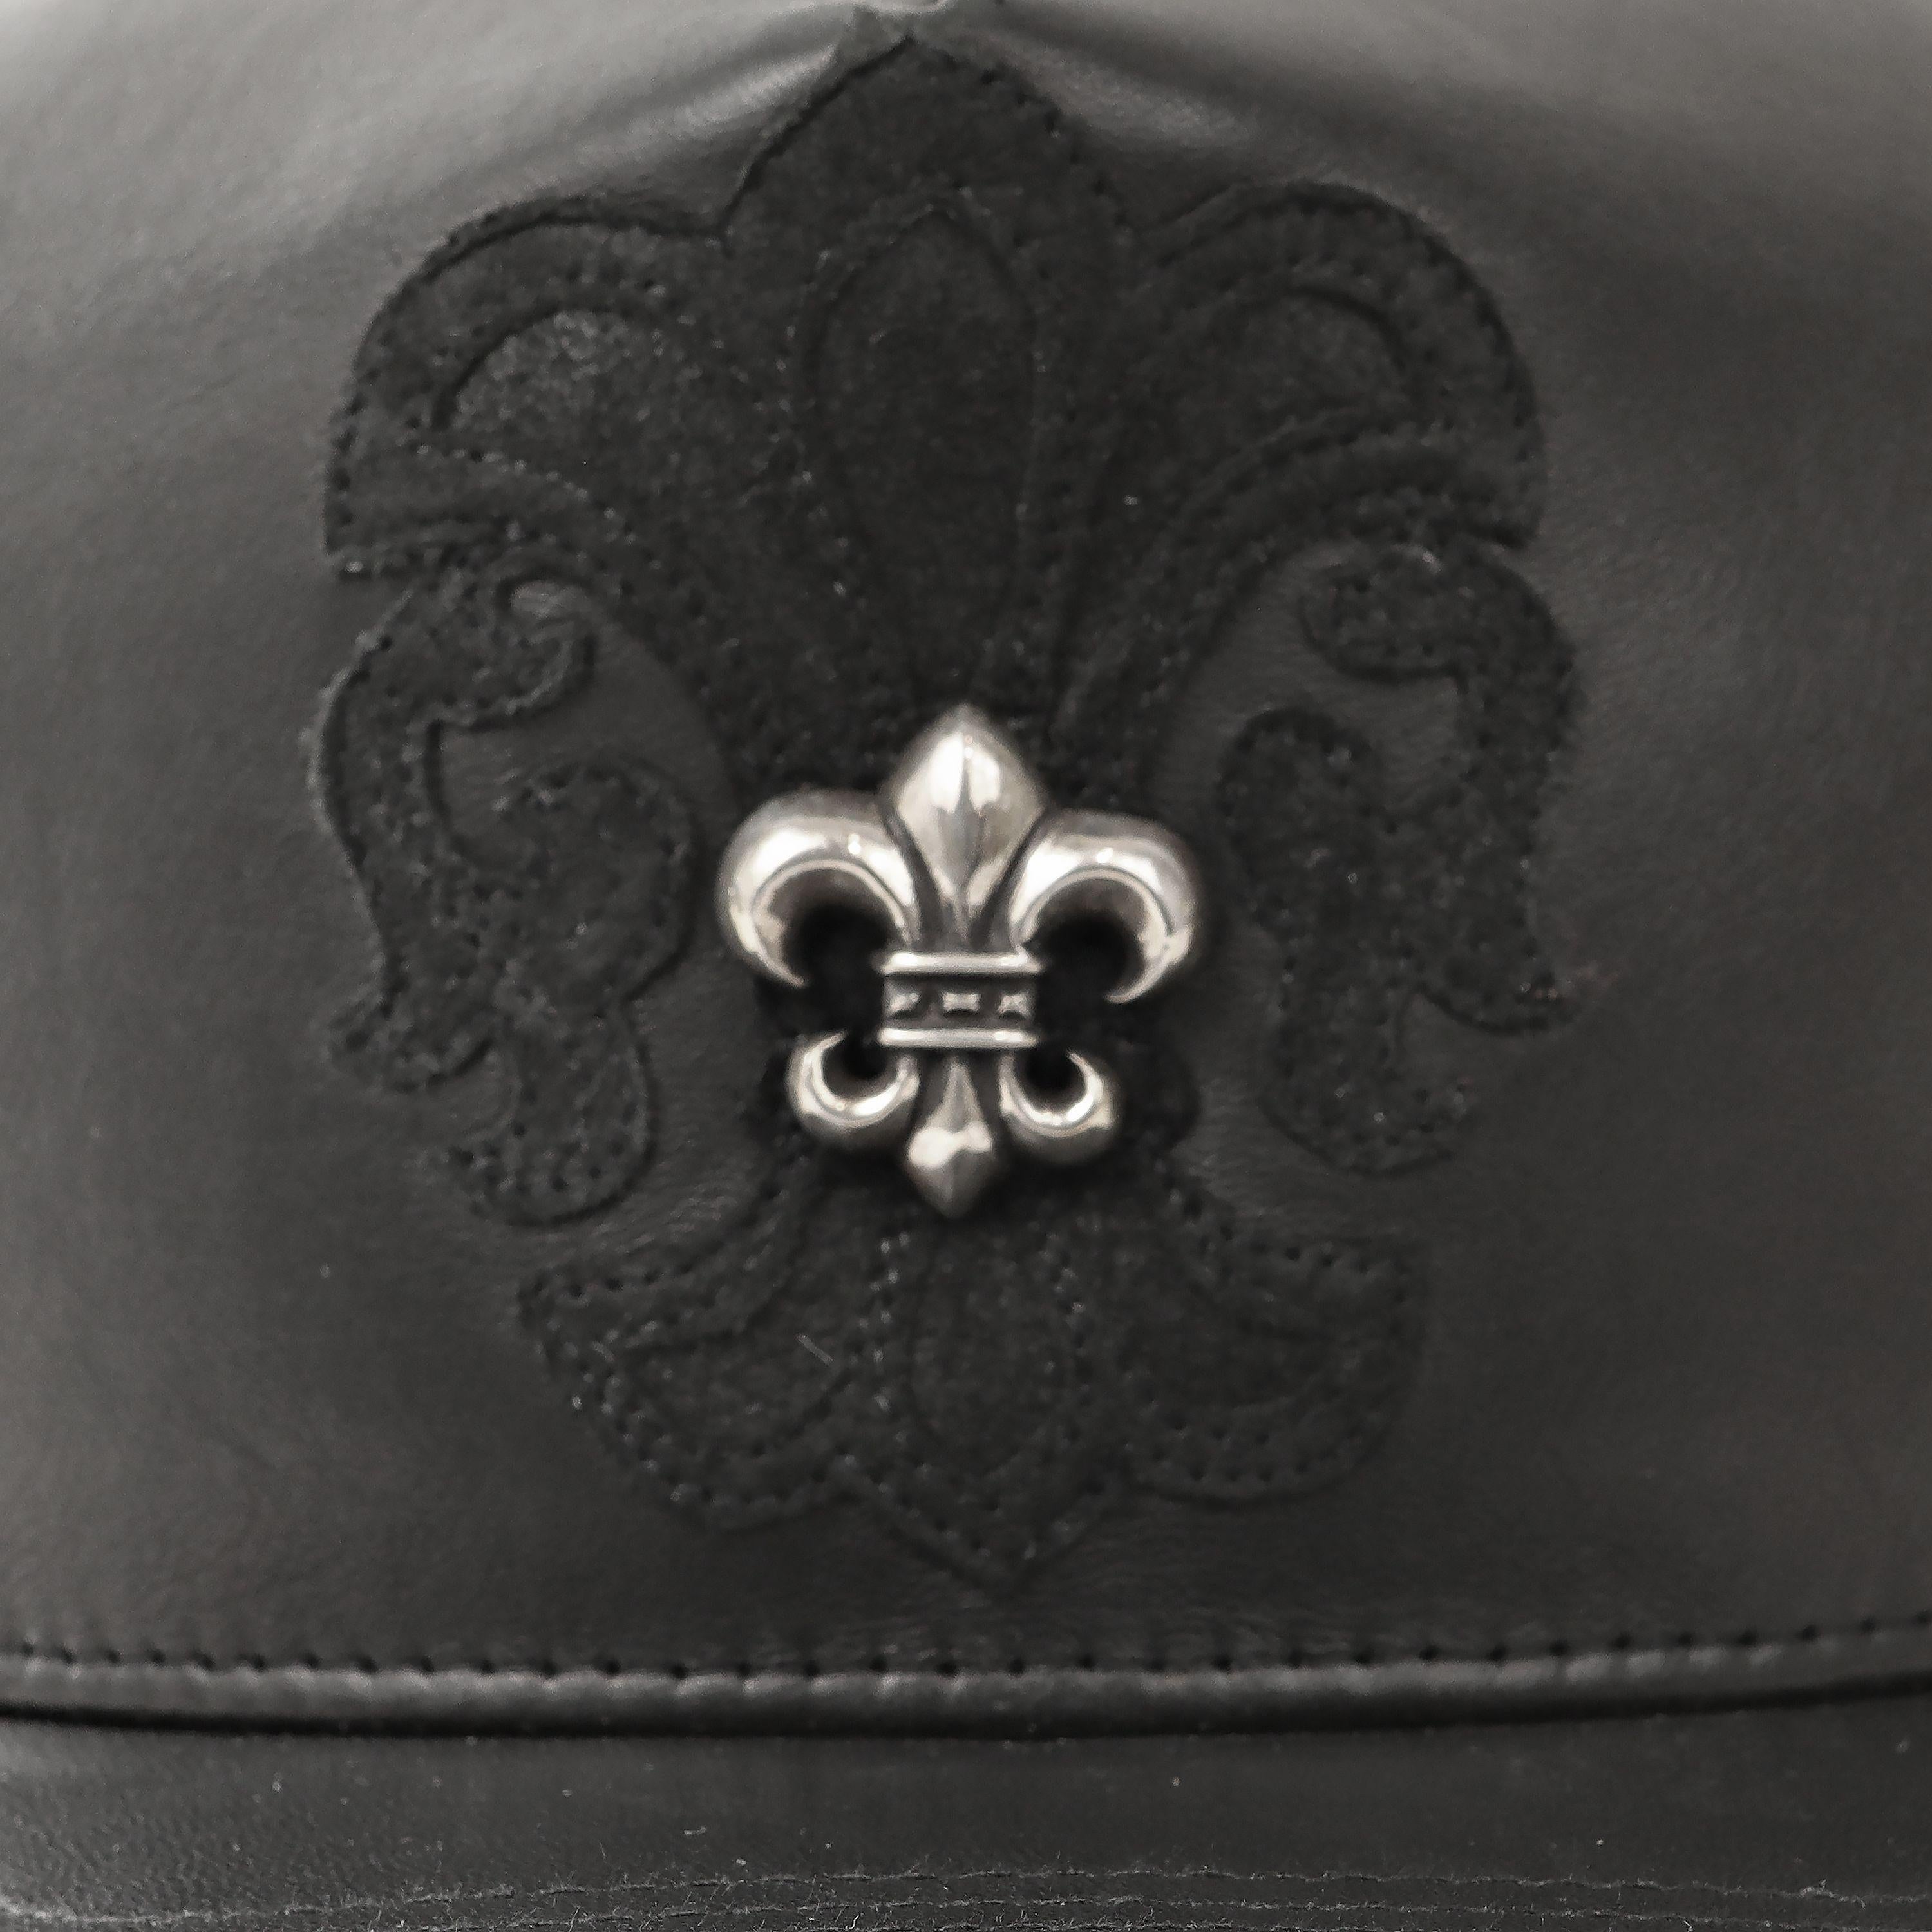 Cet authentique Chrome Hearts Black Leather Fleur de Lis Hat est en parfait état et n'a jamais été porté.  Casquette de style camionneur en cuir noir avec broderie noire et fleur de lys argentée.    

PBF 14050